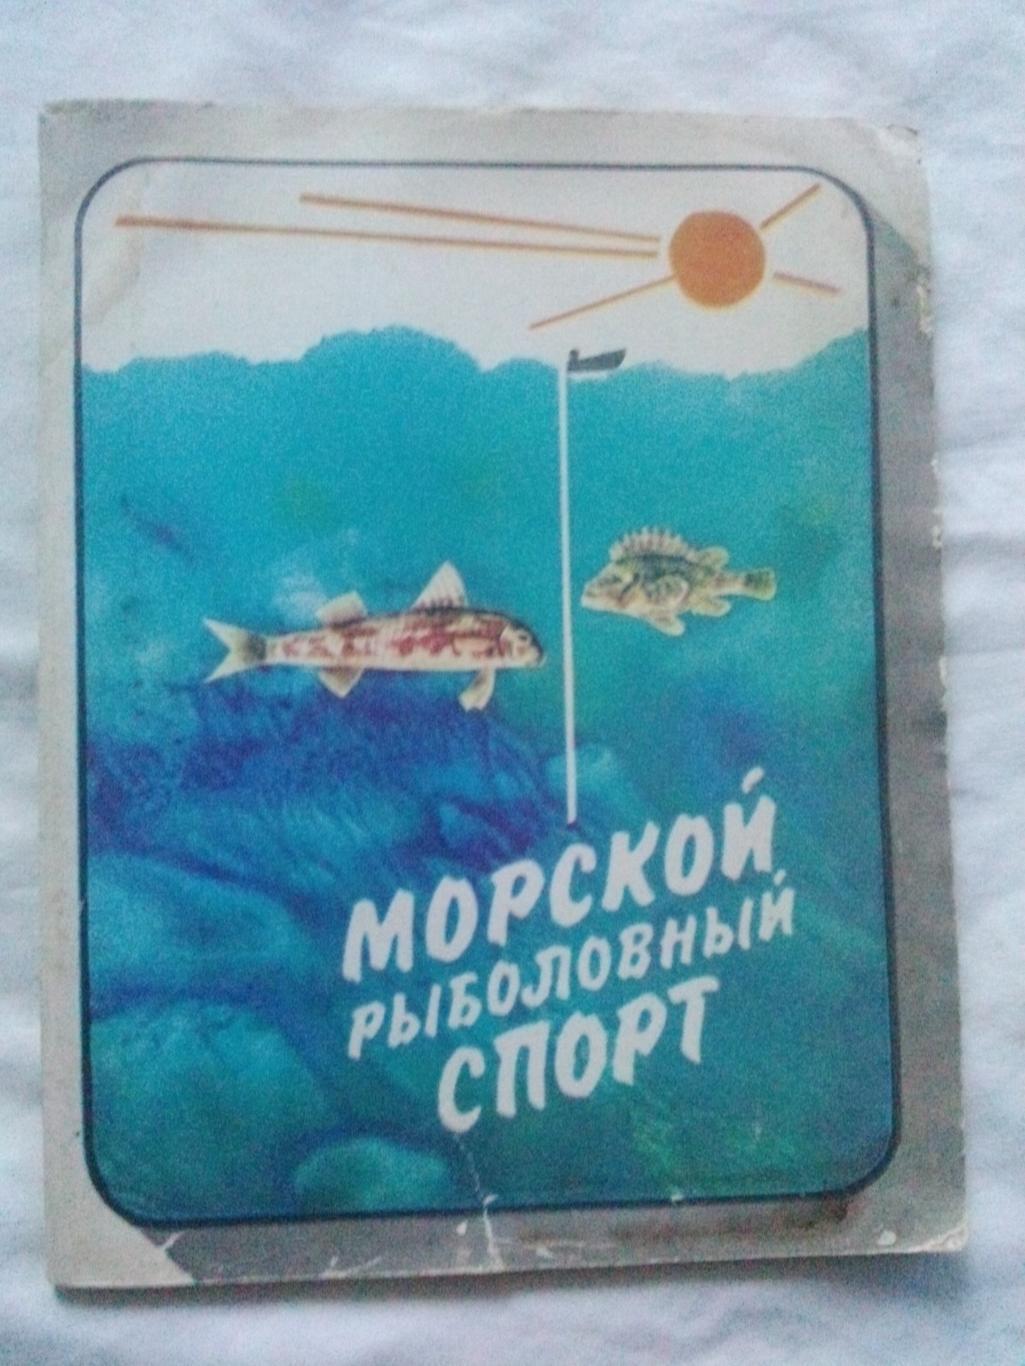 Морской рыболовный спорт 1982 г.ФиС(Рыбалка , рыболовство , рыболов)